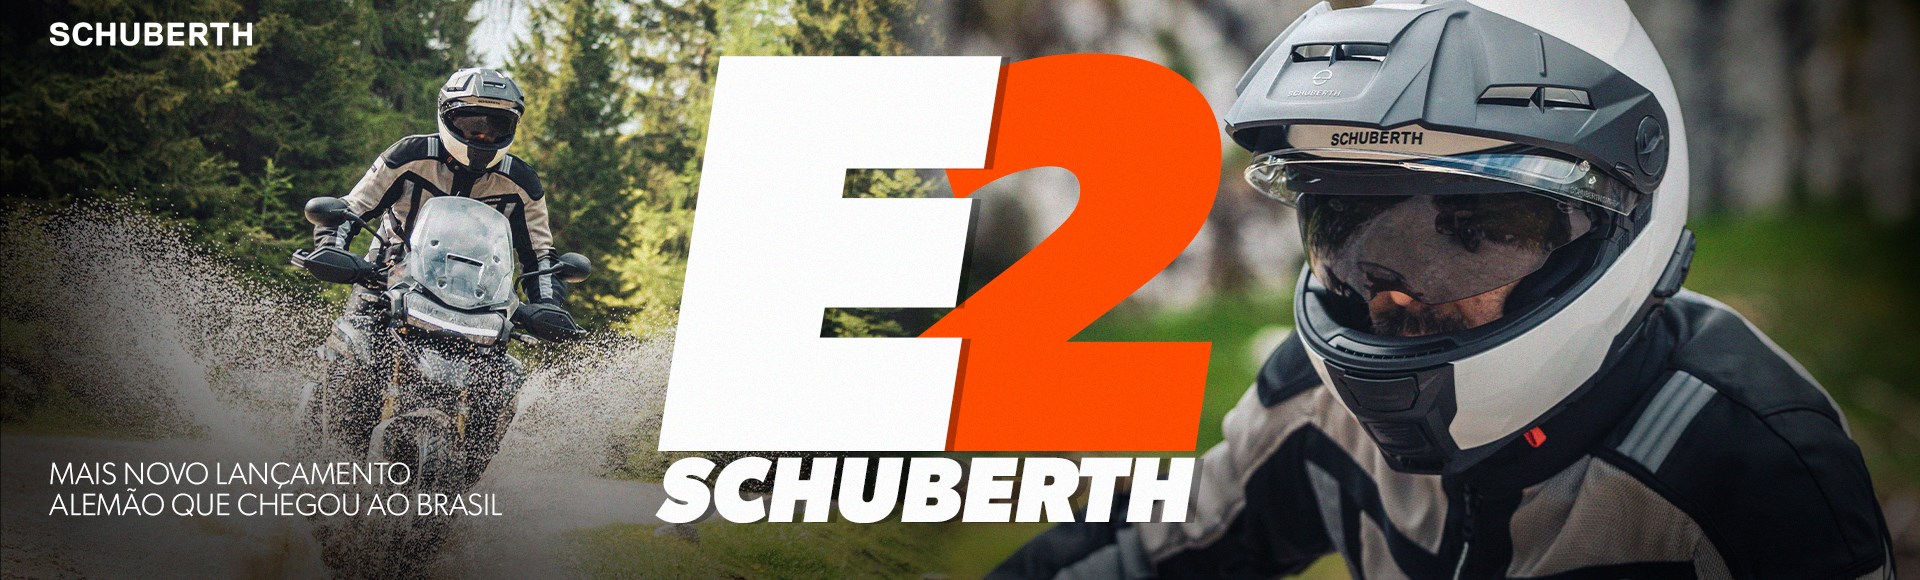 SCHUBERTH E2